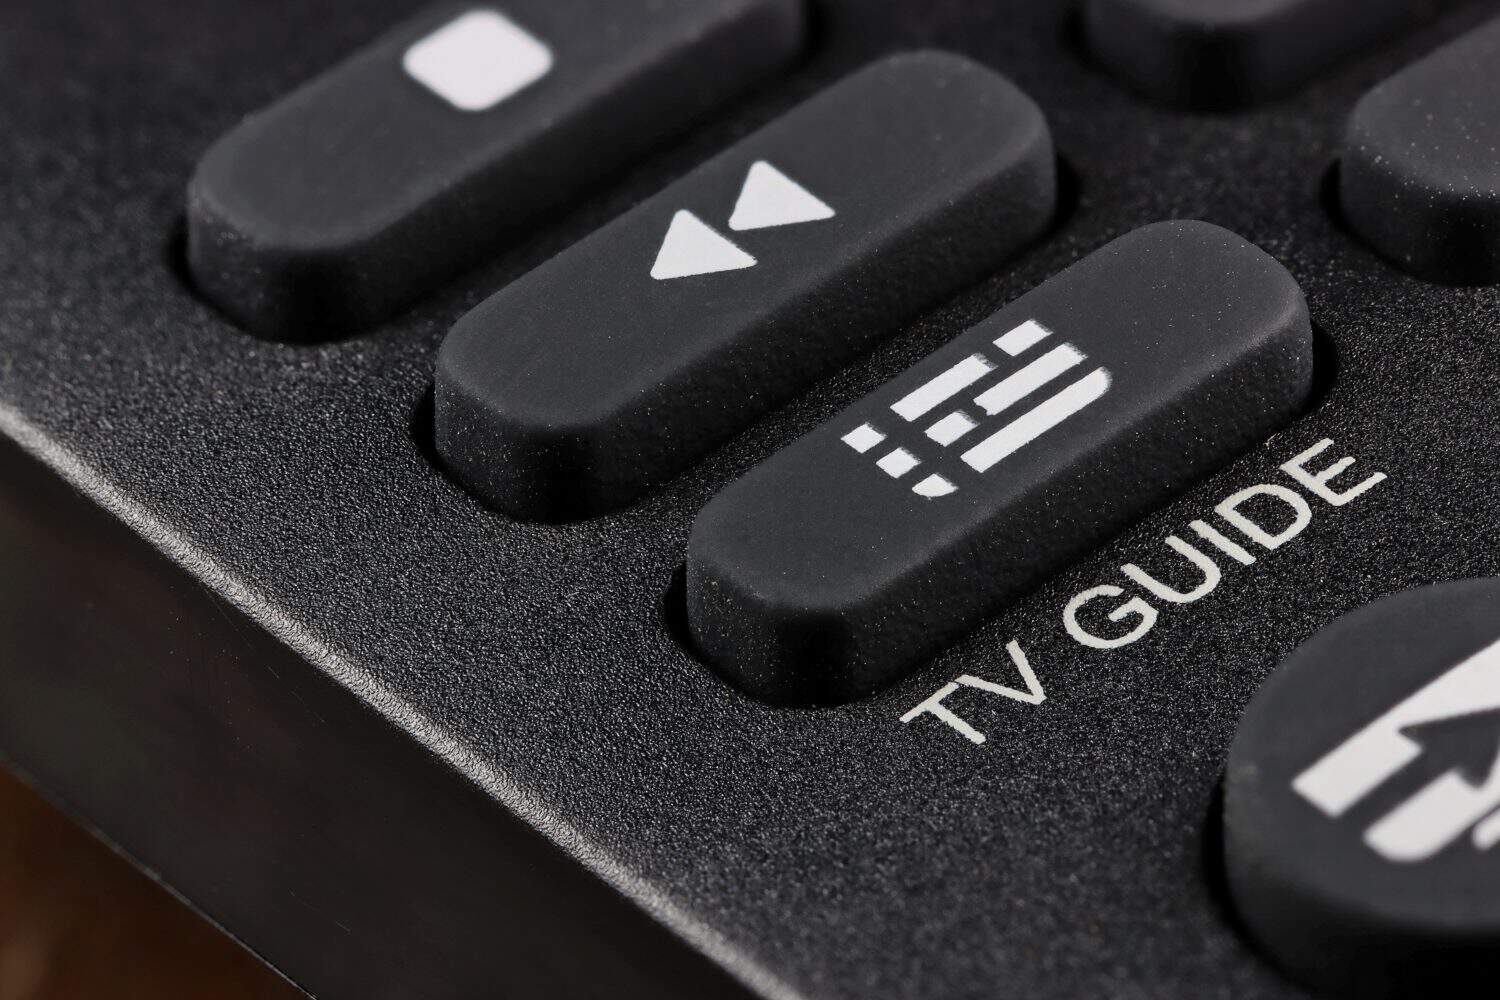 TV guide button on remote control